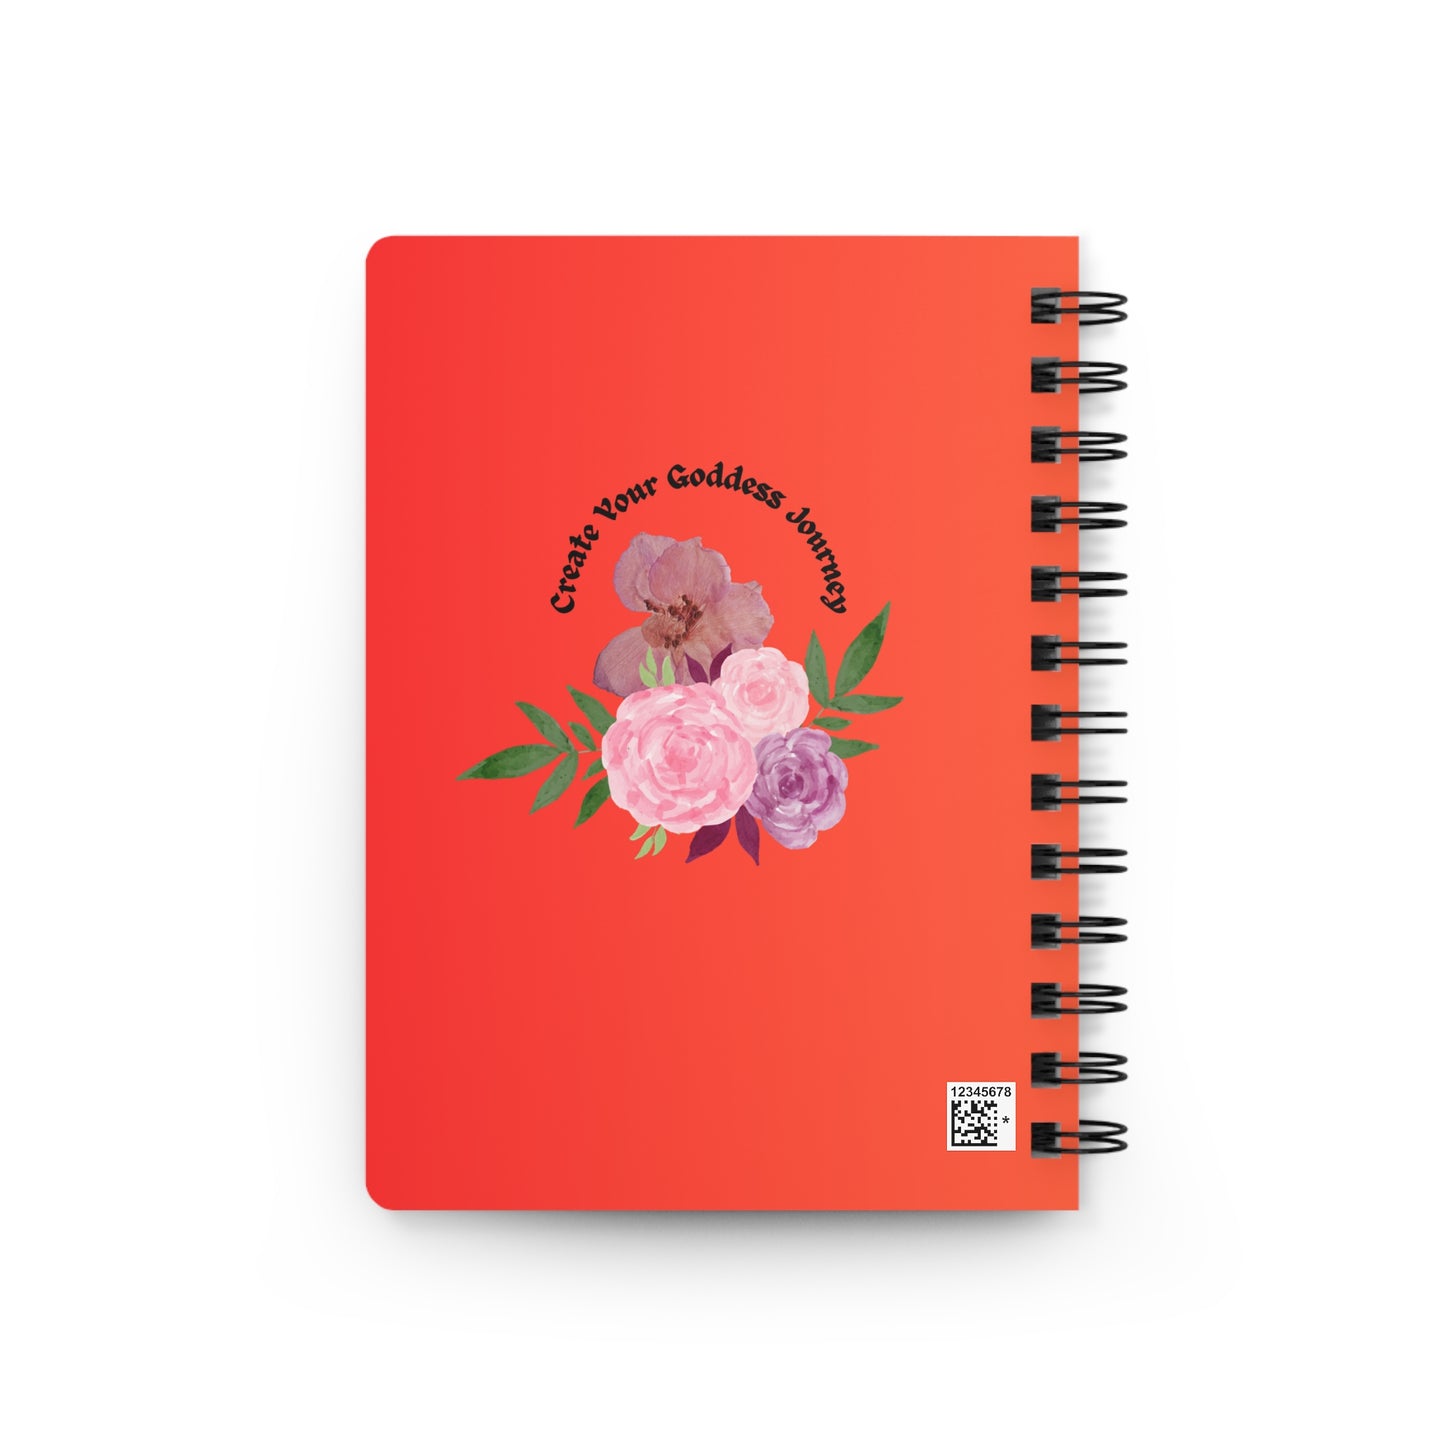 Peaceful Goddess Notebook